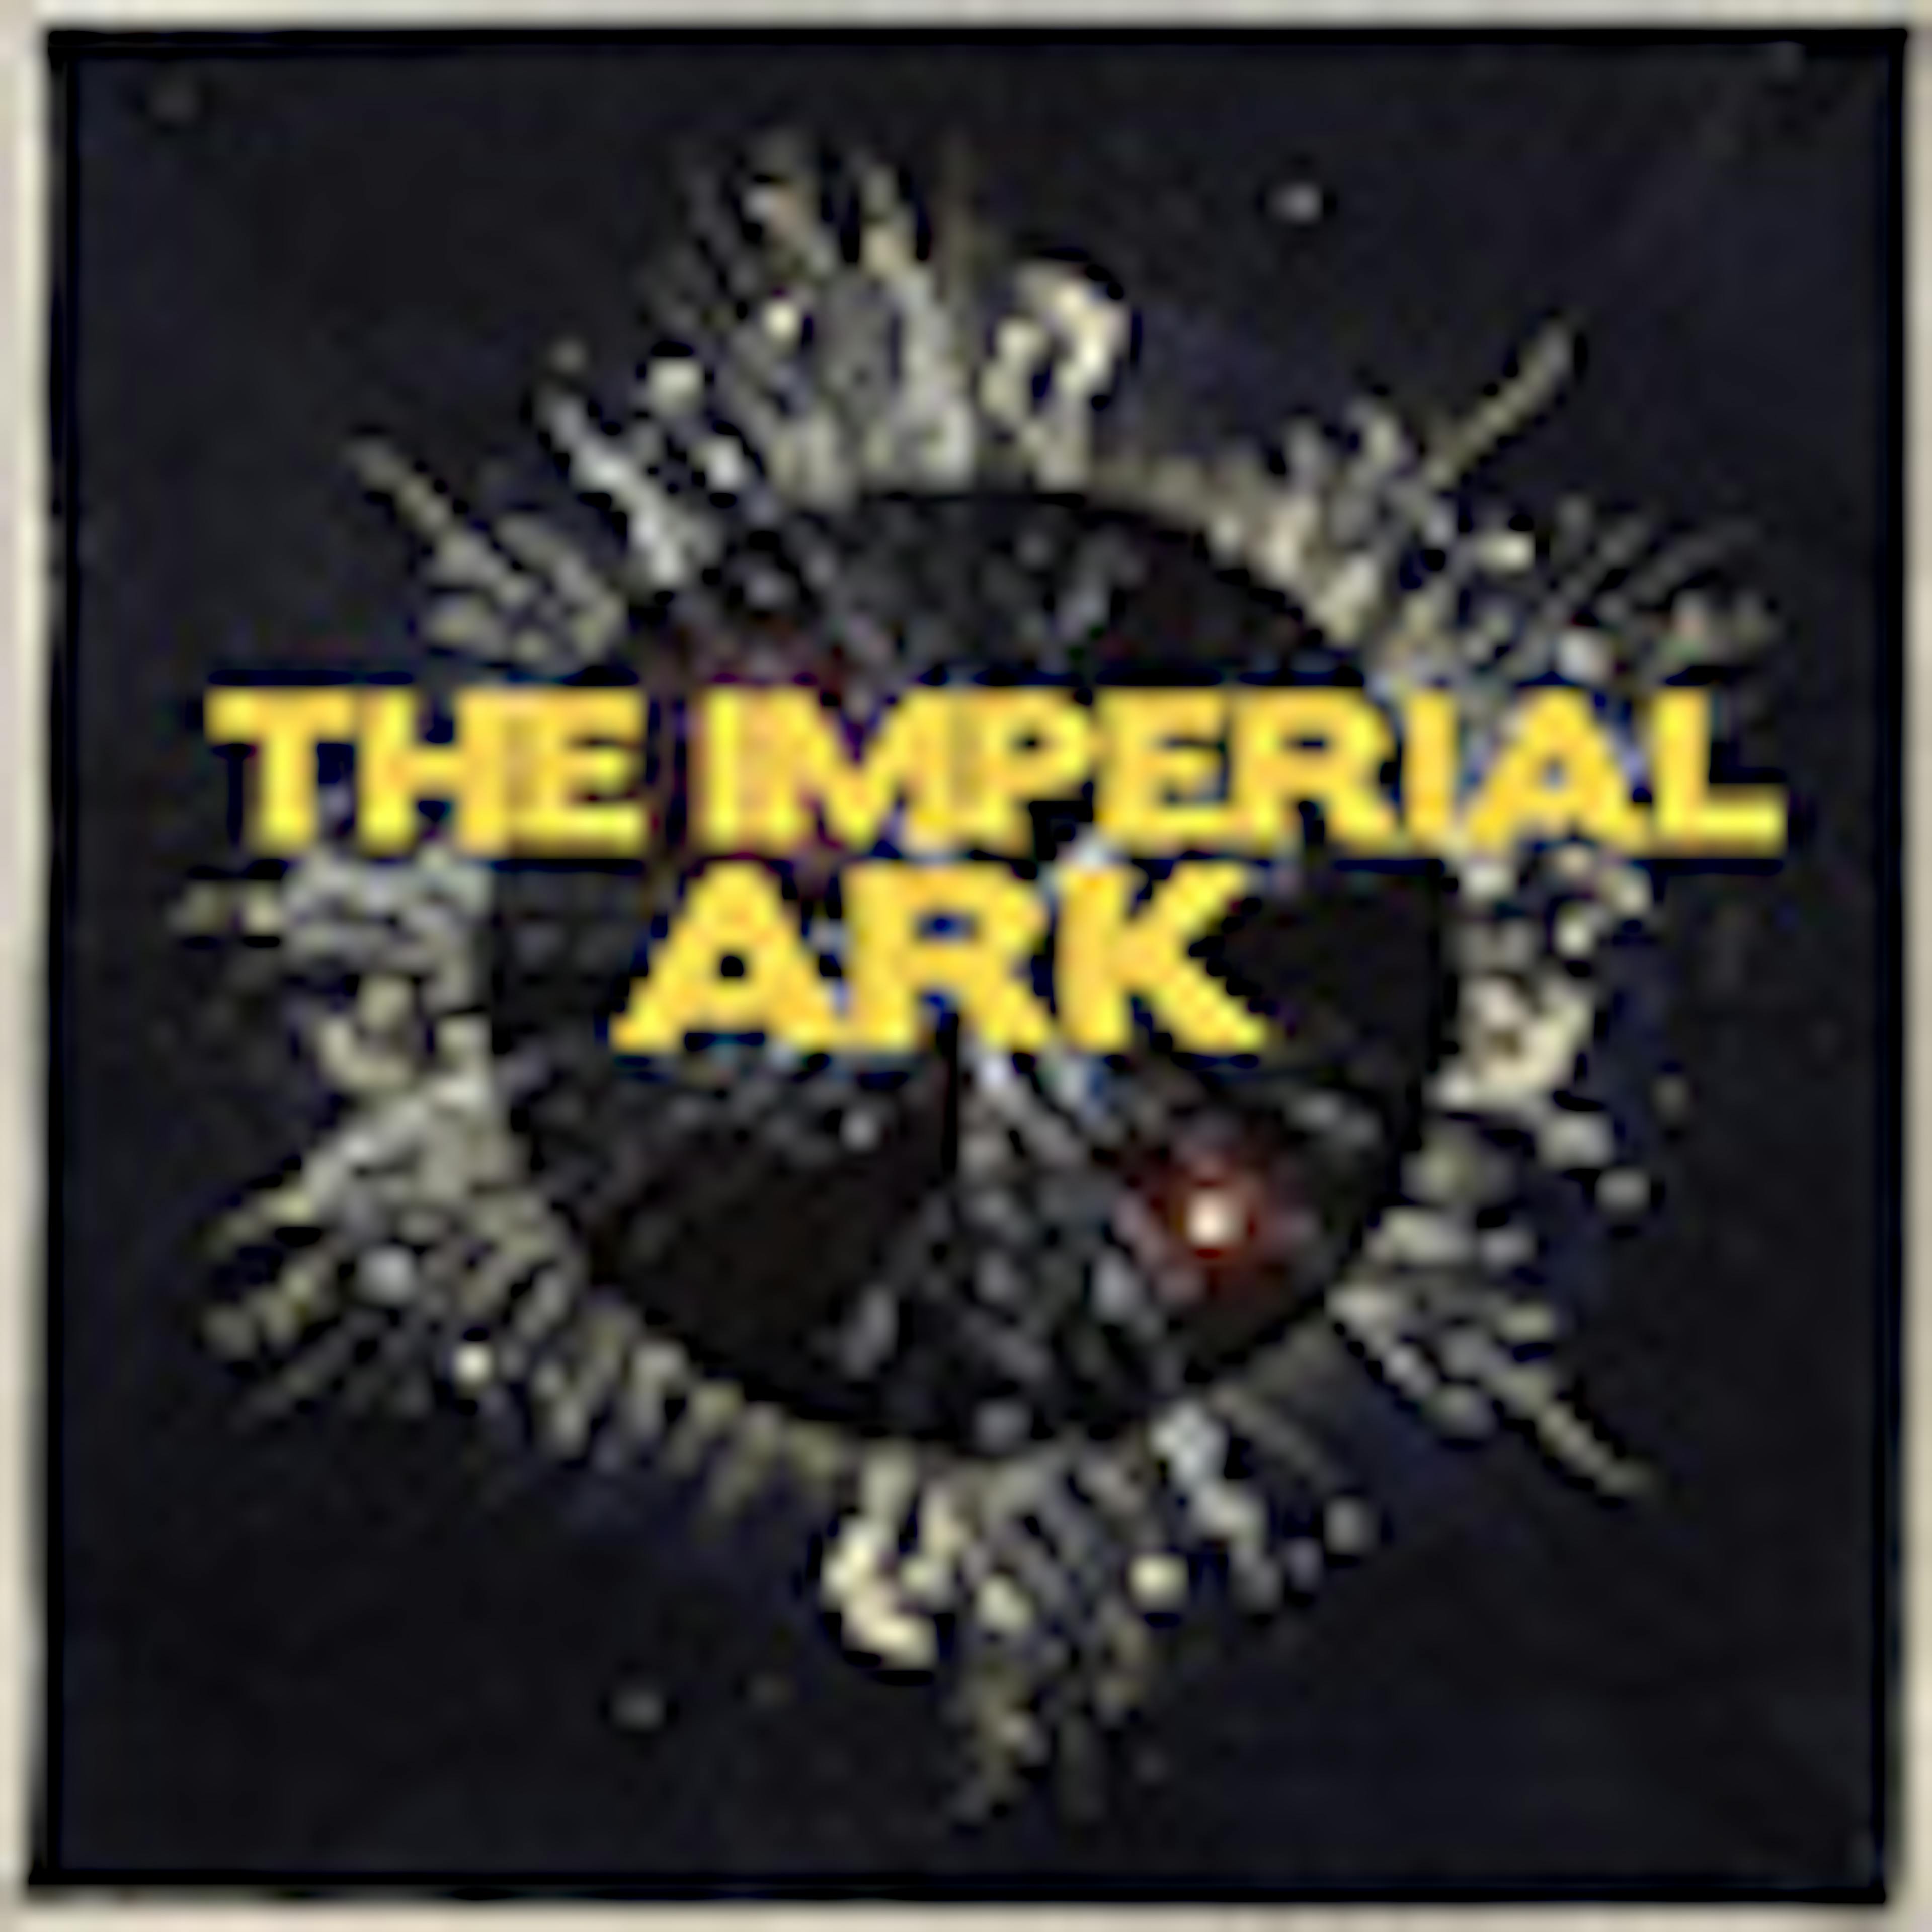 The Imperial Ark album cover